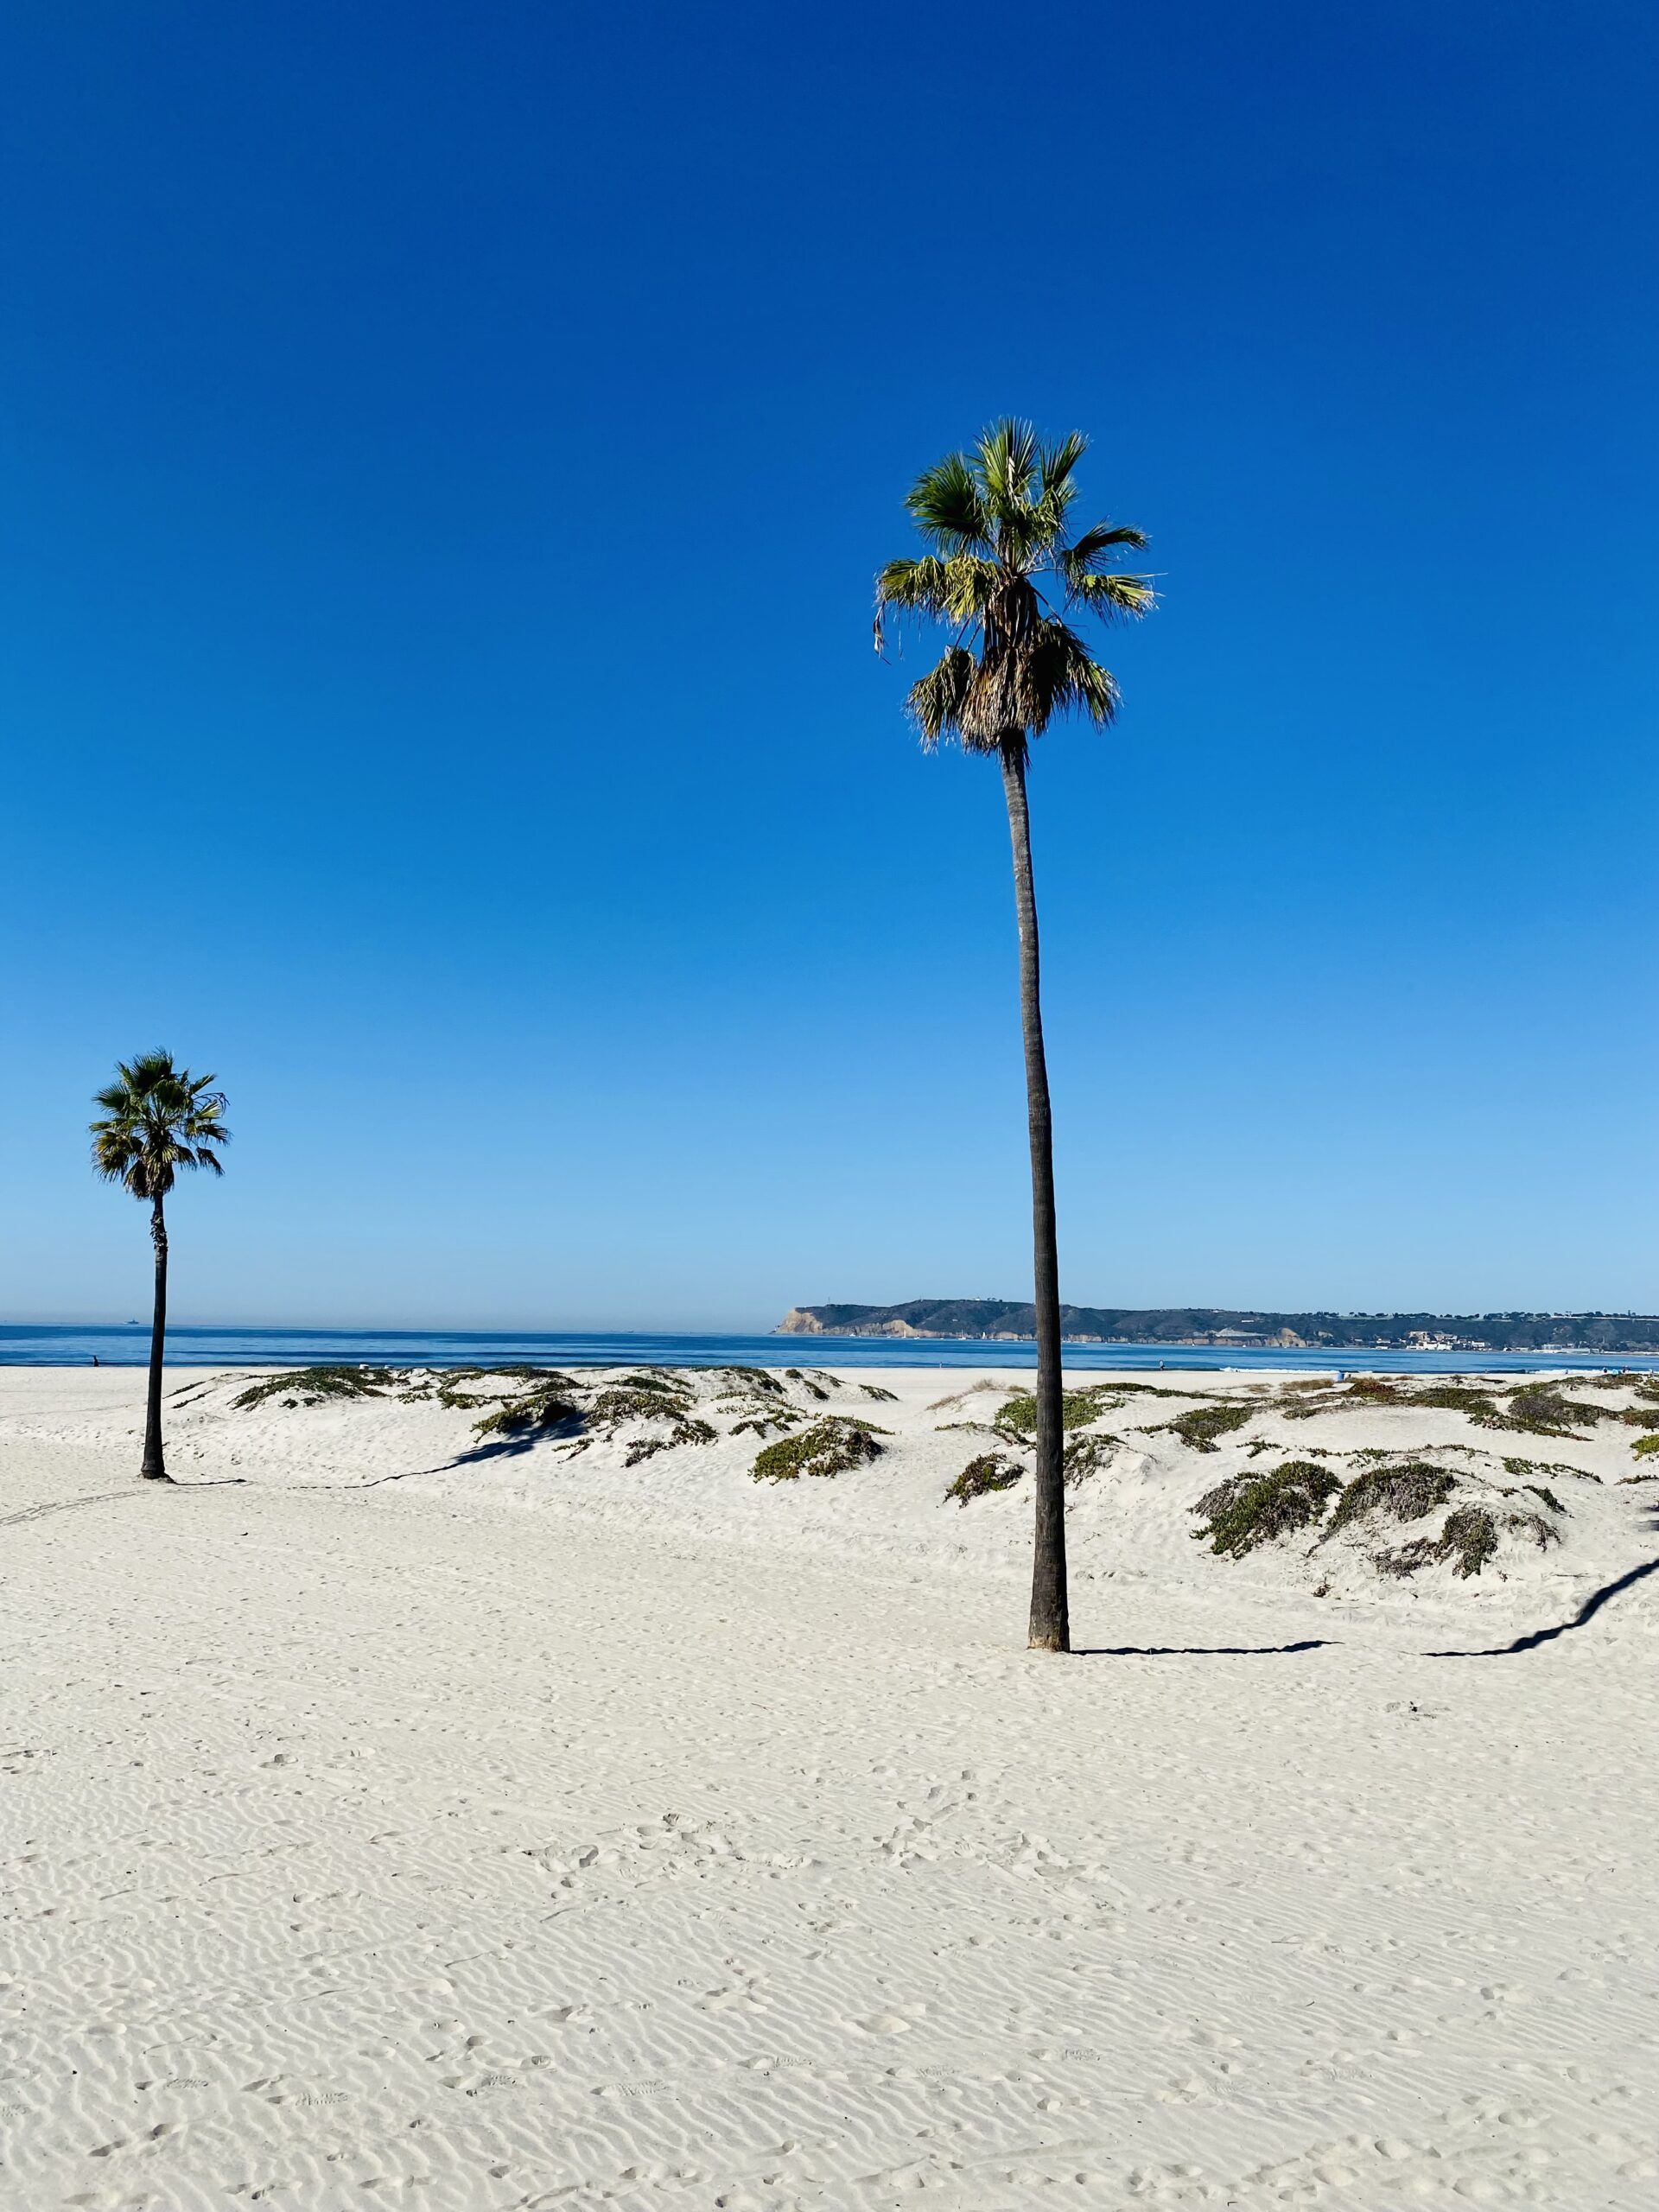 Giada Bravo a 40 anni ha deciso di mollare tutto: destinazione San Diego